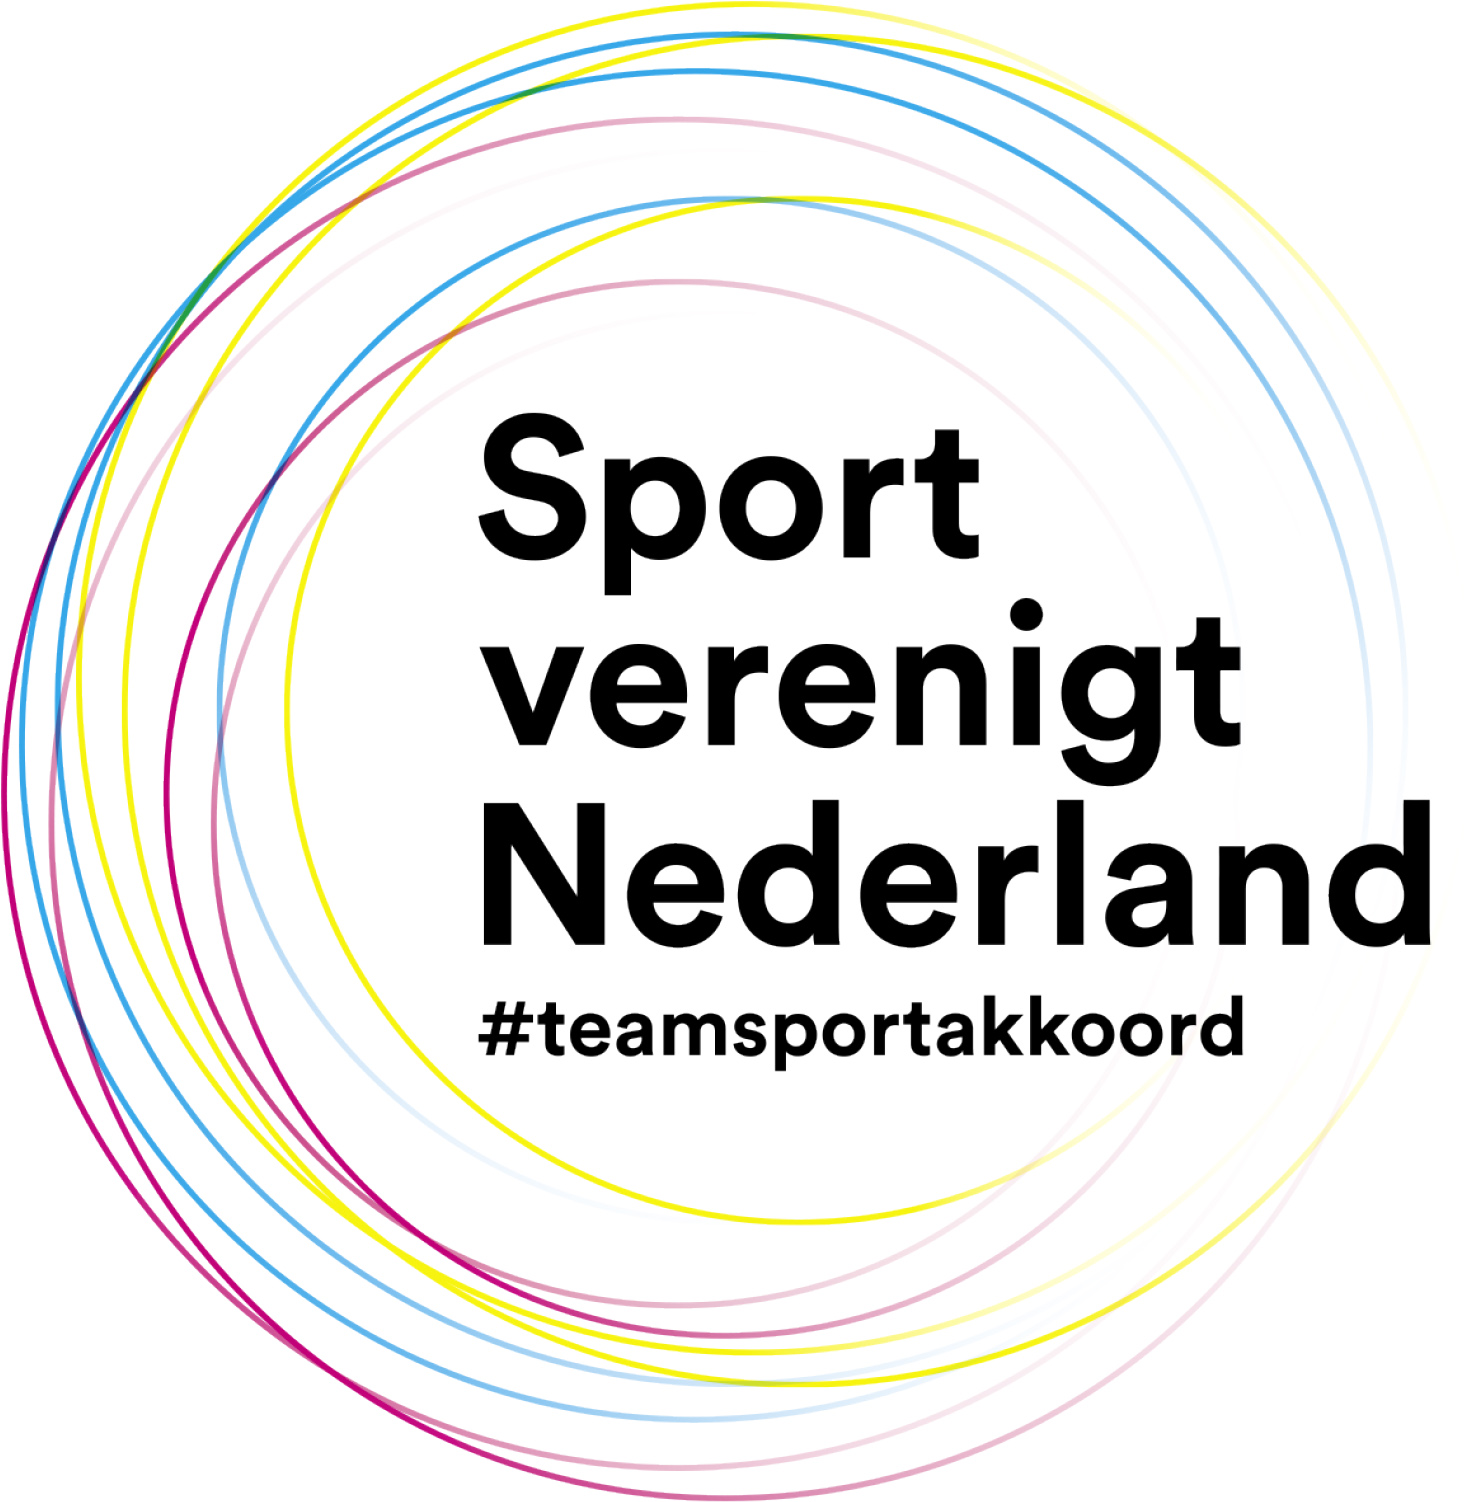 sport verenigt NL.jpg